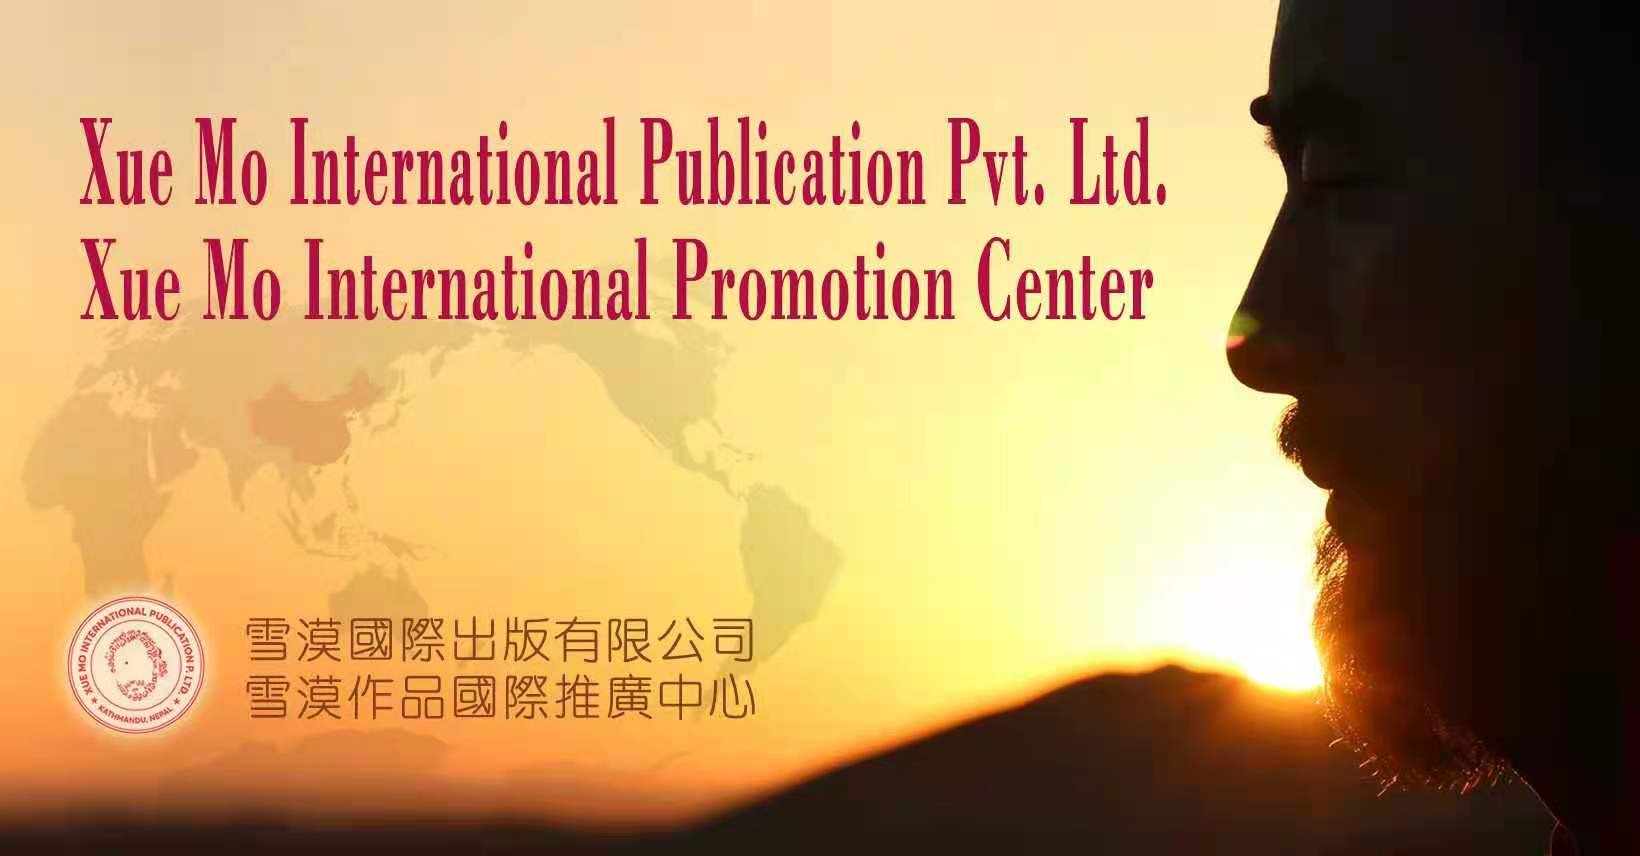 雪漠国际出版有限公司与雪漠作品国际推广中心